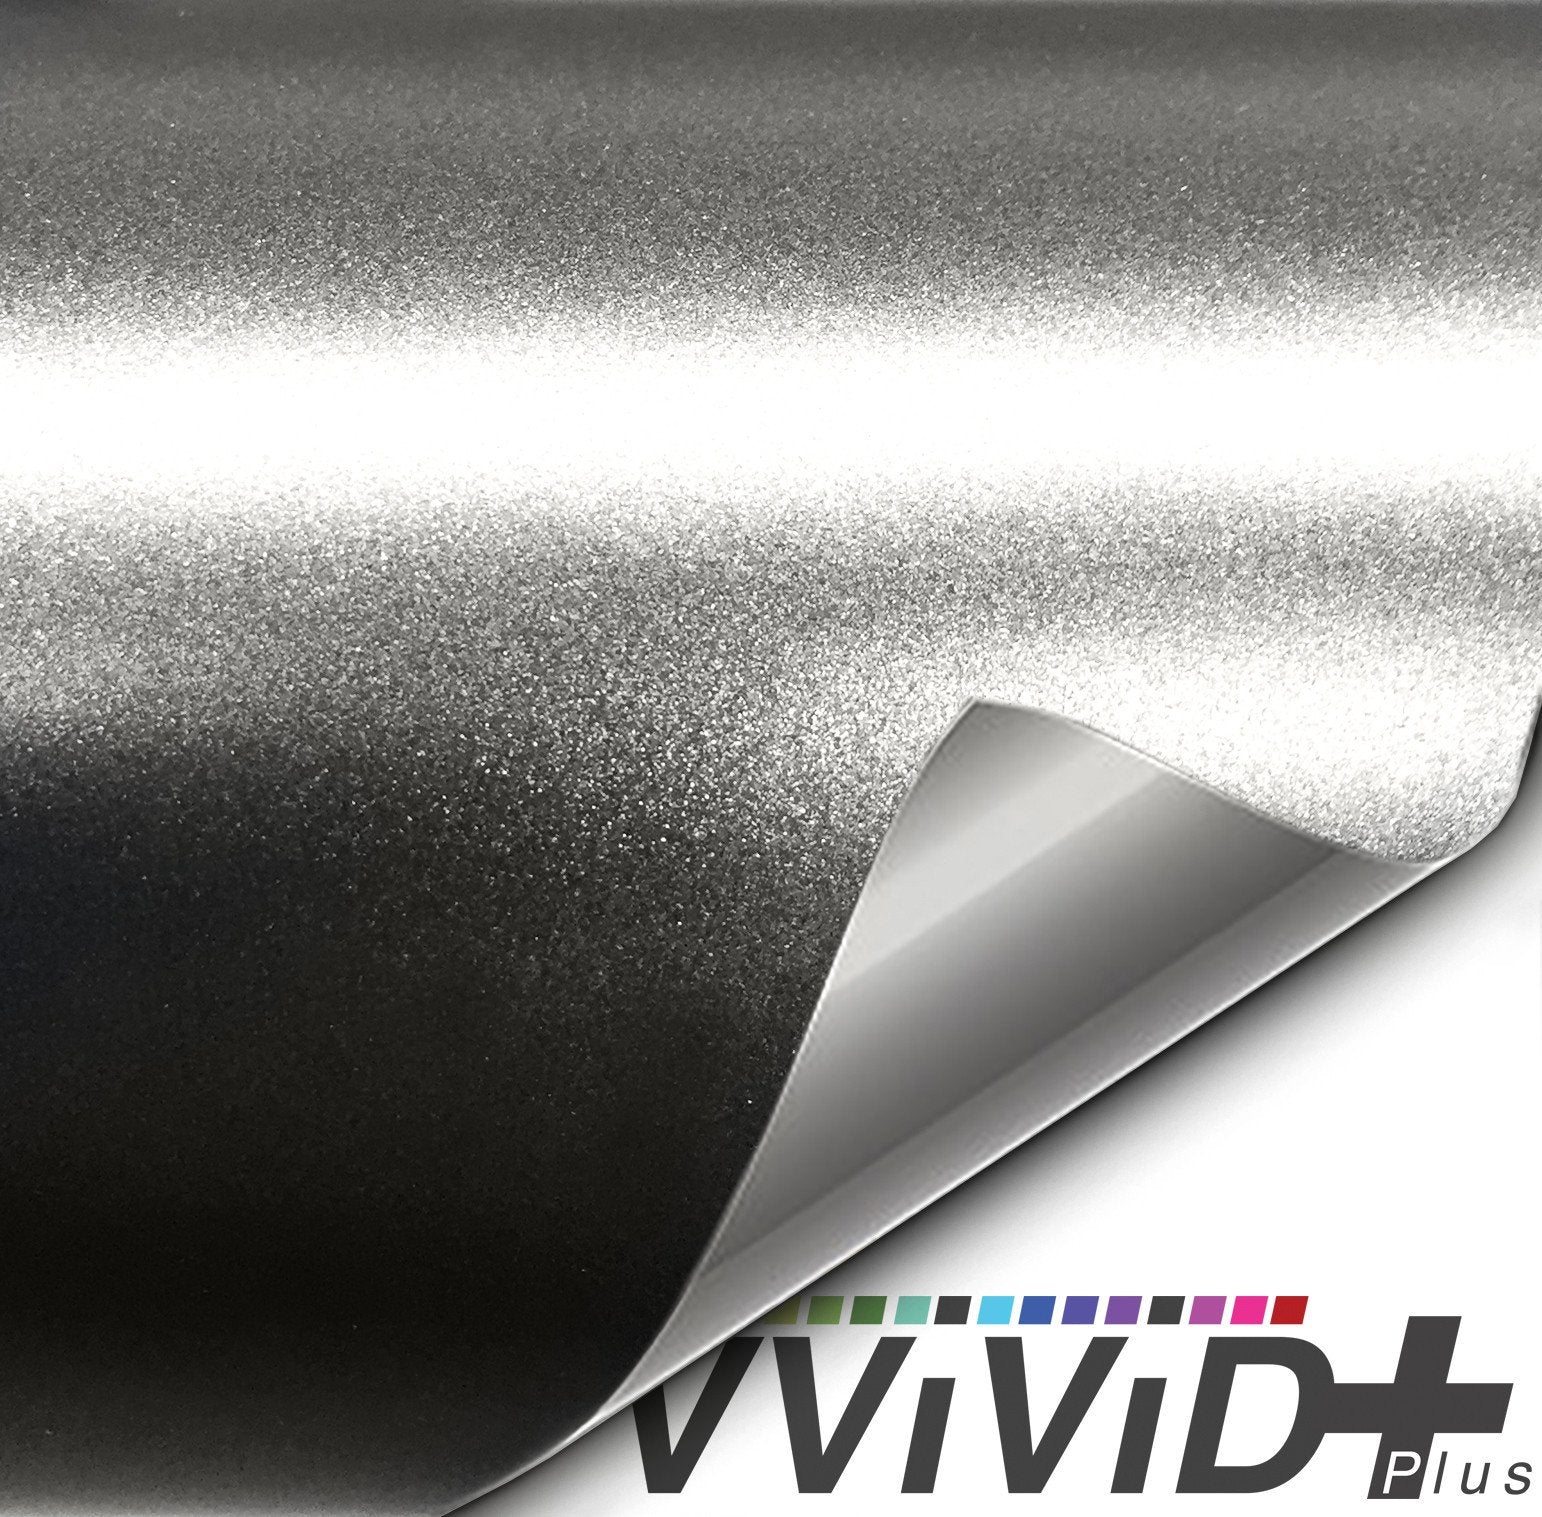 VViViD+ Satin Chrome Titanium - The VViViD Vinyl Wrap Shop